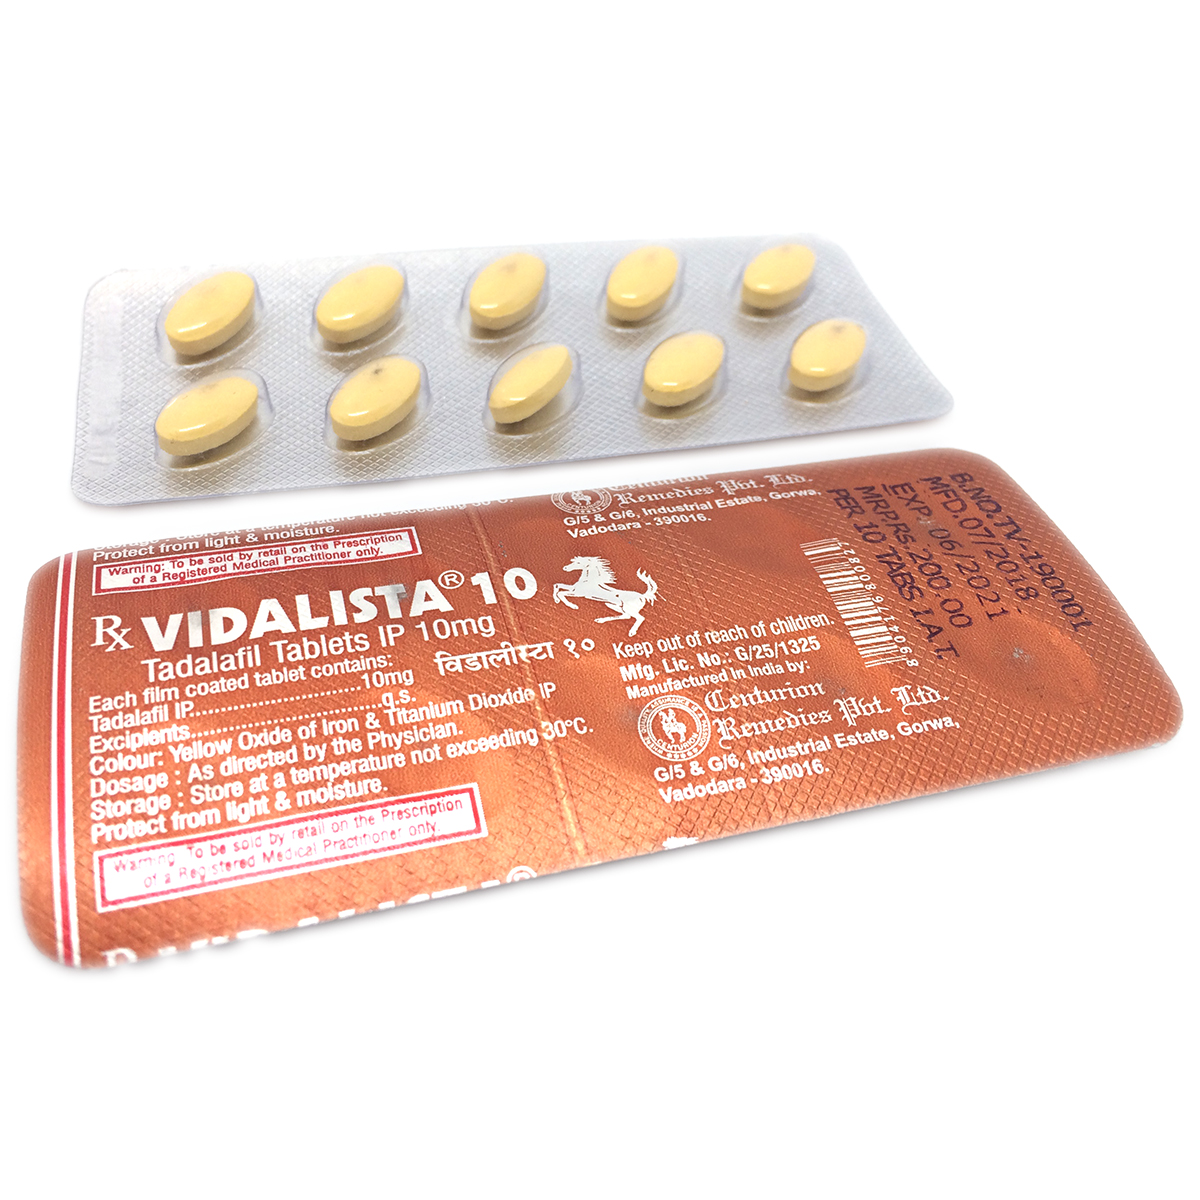 Купить Сиалис 10 мг в интернет аптеке с доставкой Новой Почтой